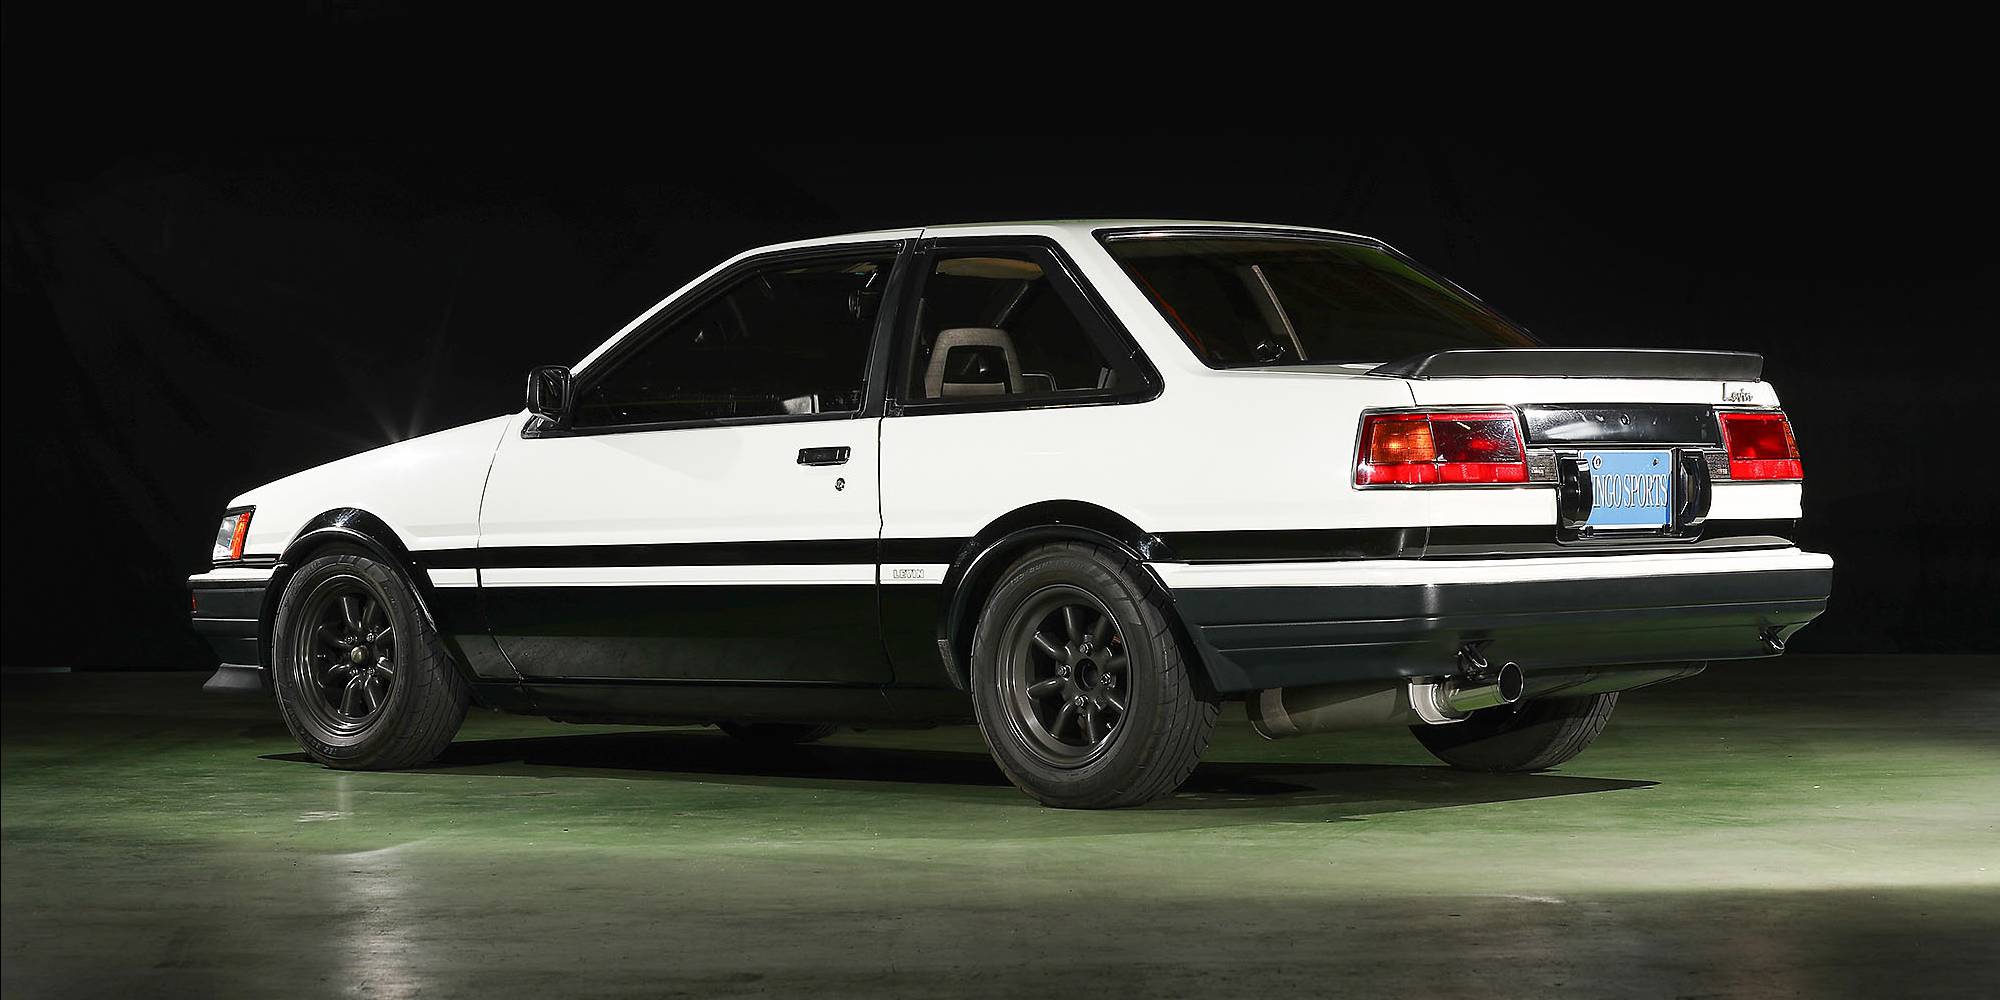 1987年式 トヨタ カローラレビン AE86 GT-APEX|ビンゴスポーツ/希少車、 絶版車、高級車の販売・買取。